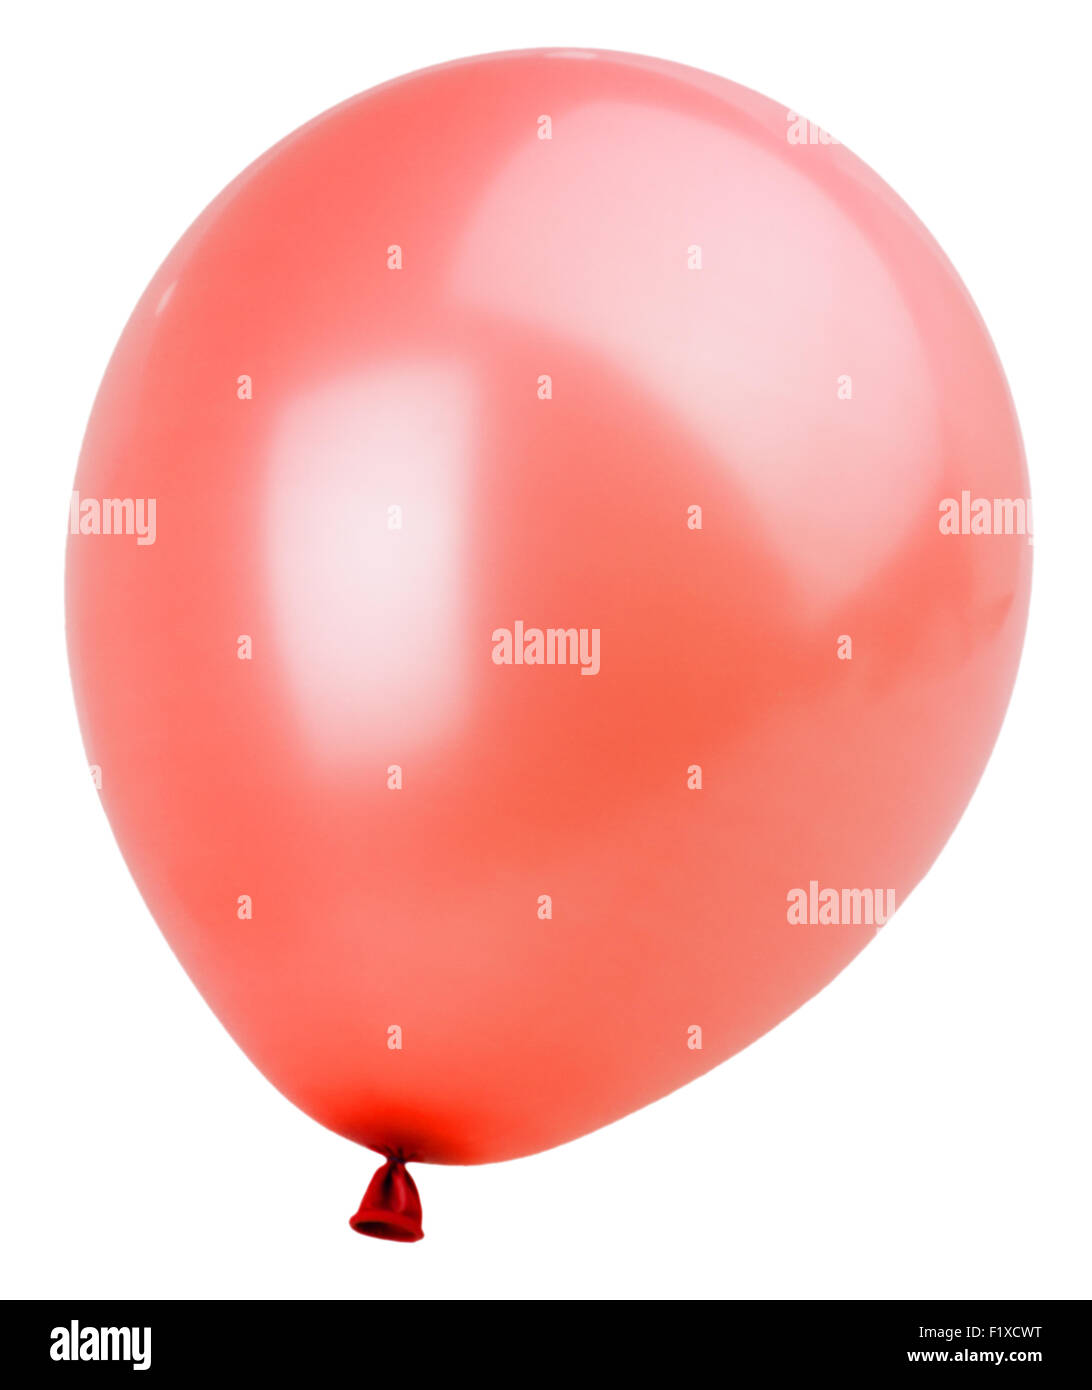 Ballon rouge sur fond blanc Banque D'Images